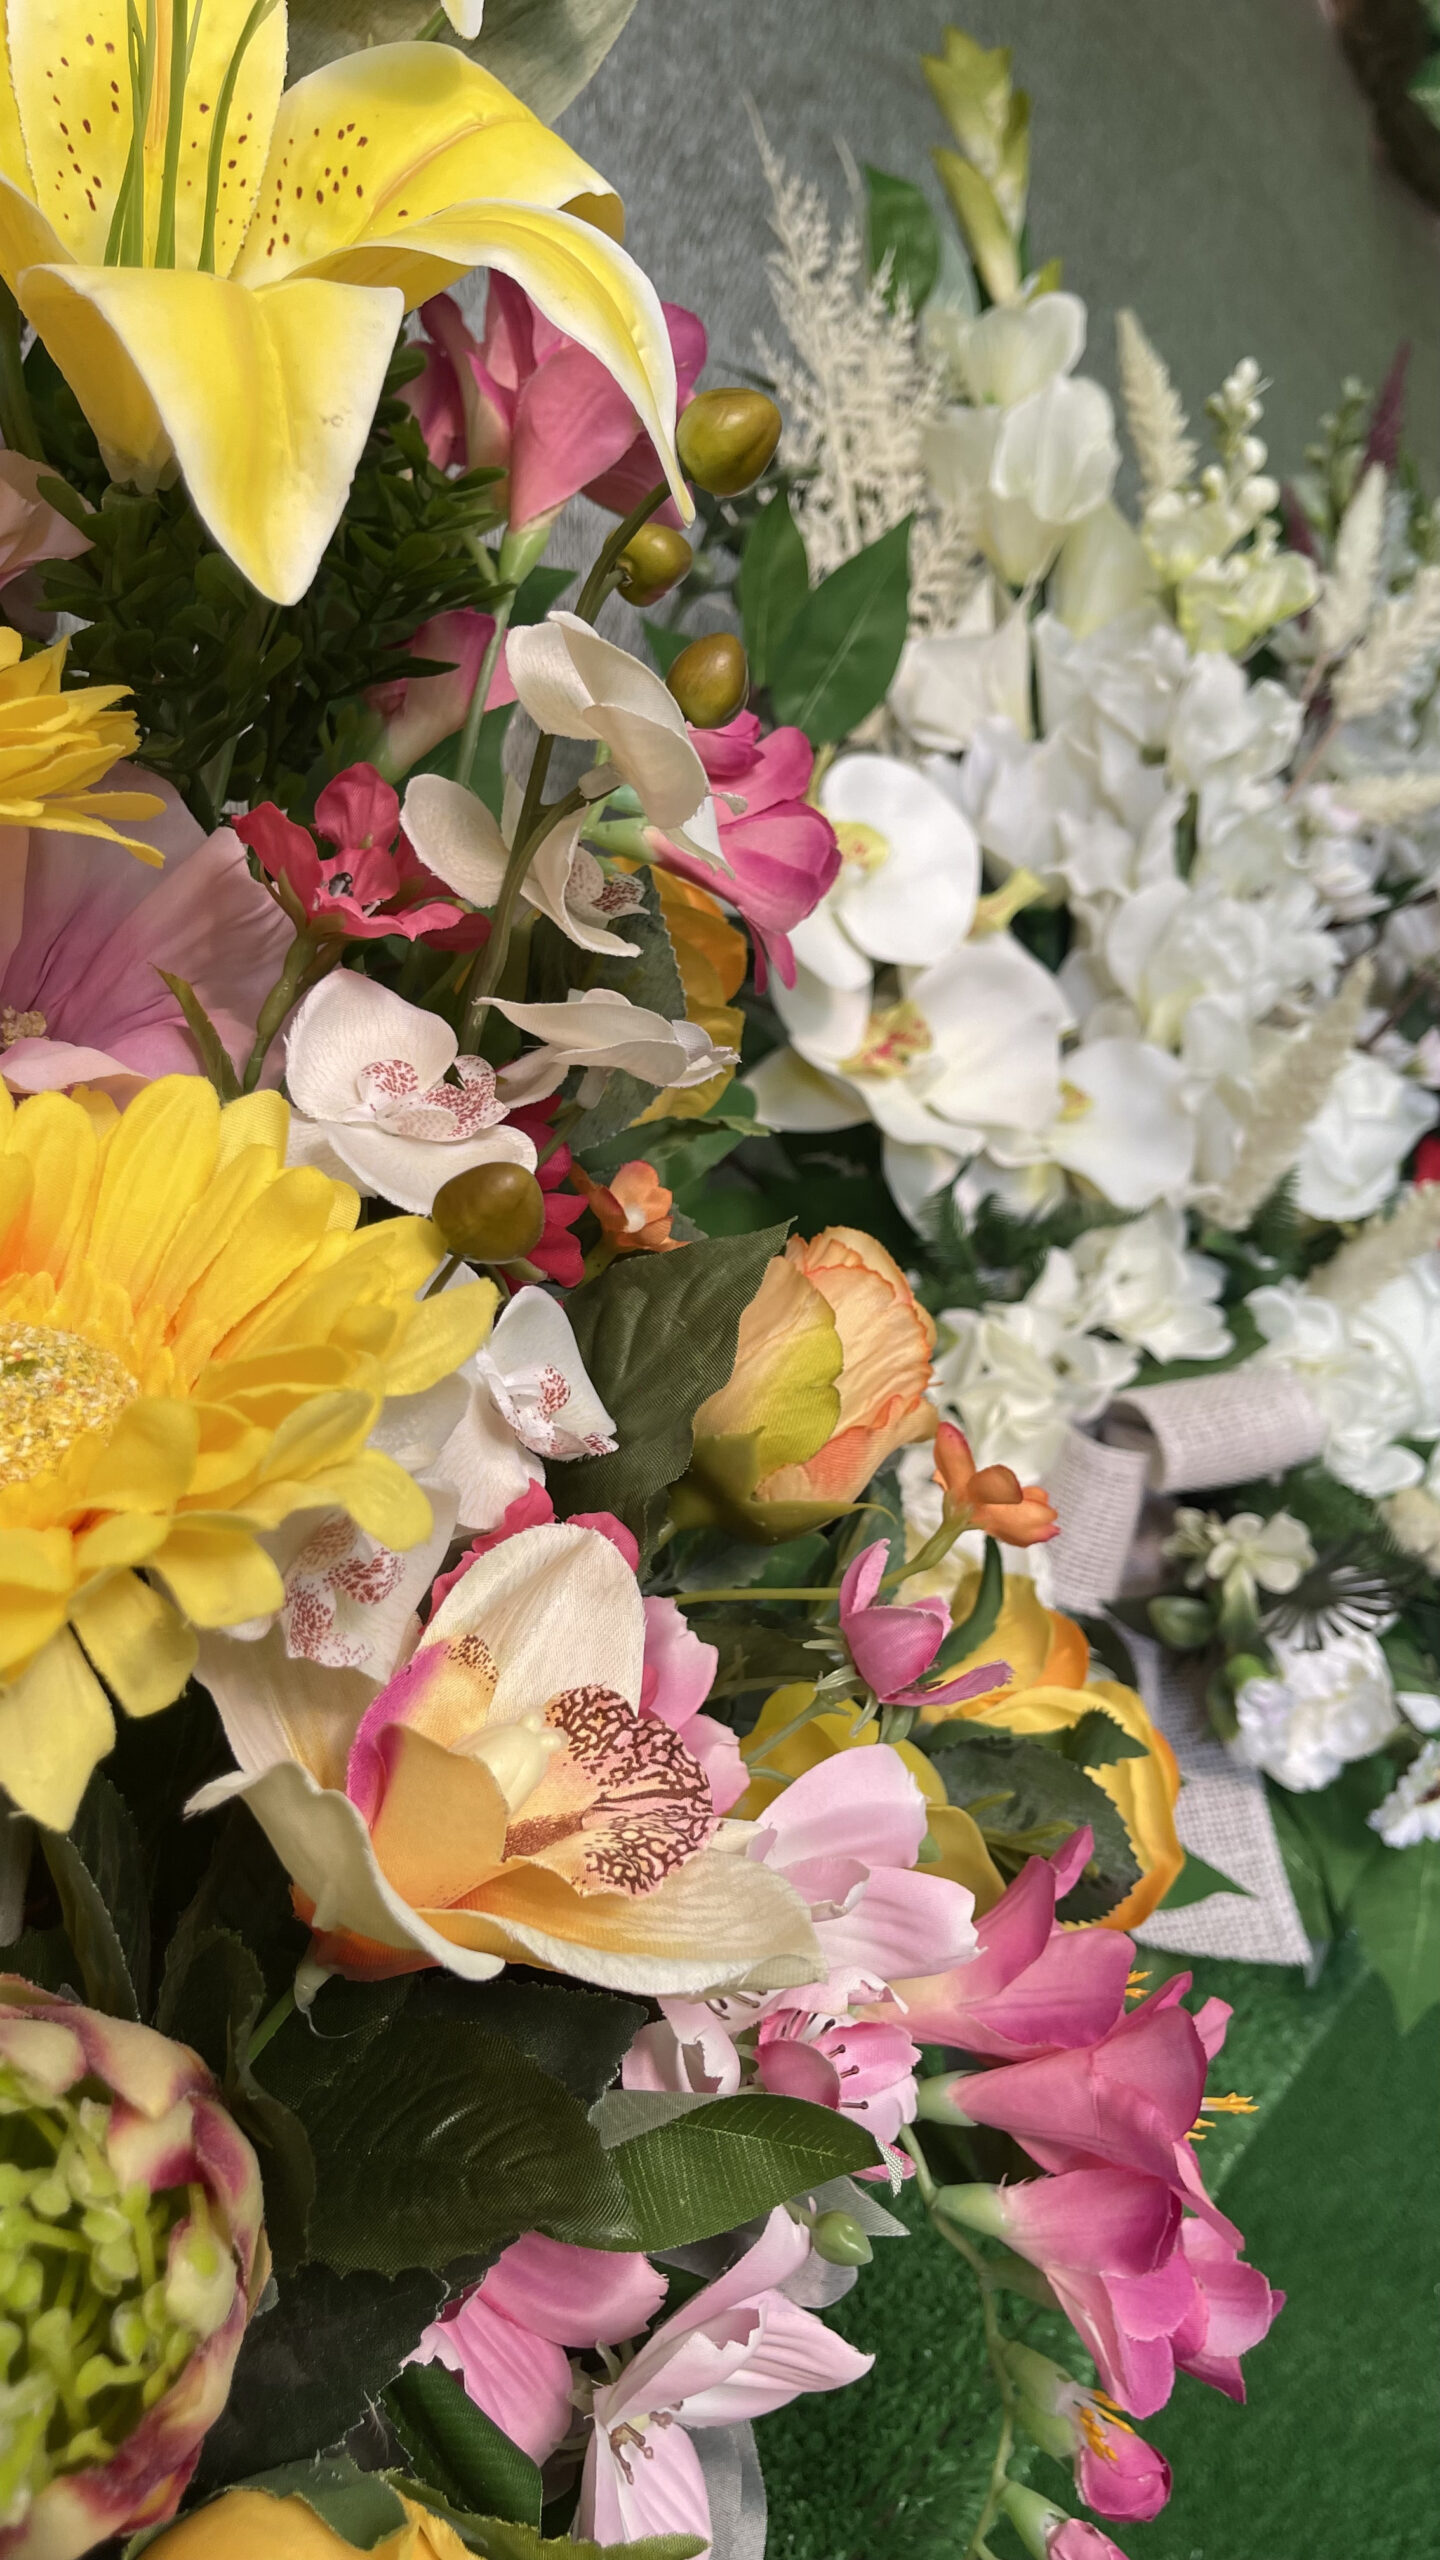 Foto de la tienda de Rapiplant donde se puede observar distintas flores en venta